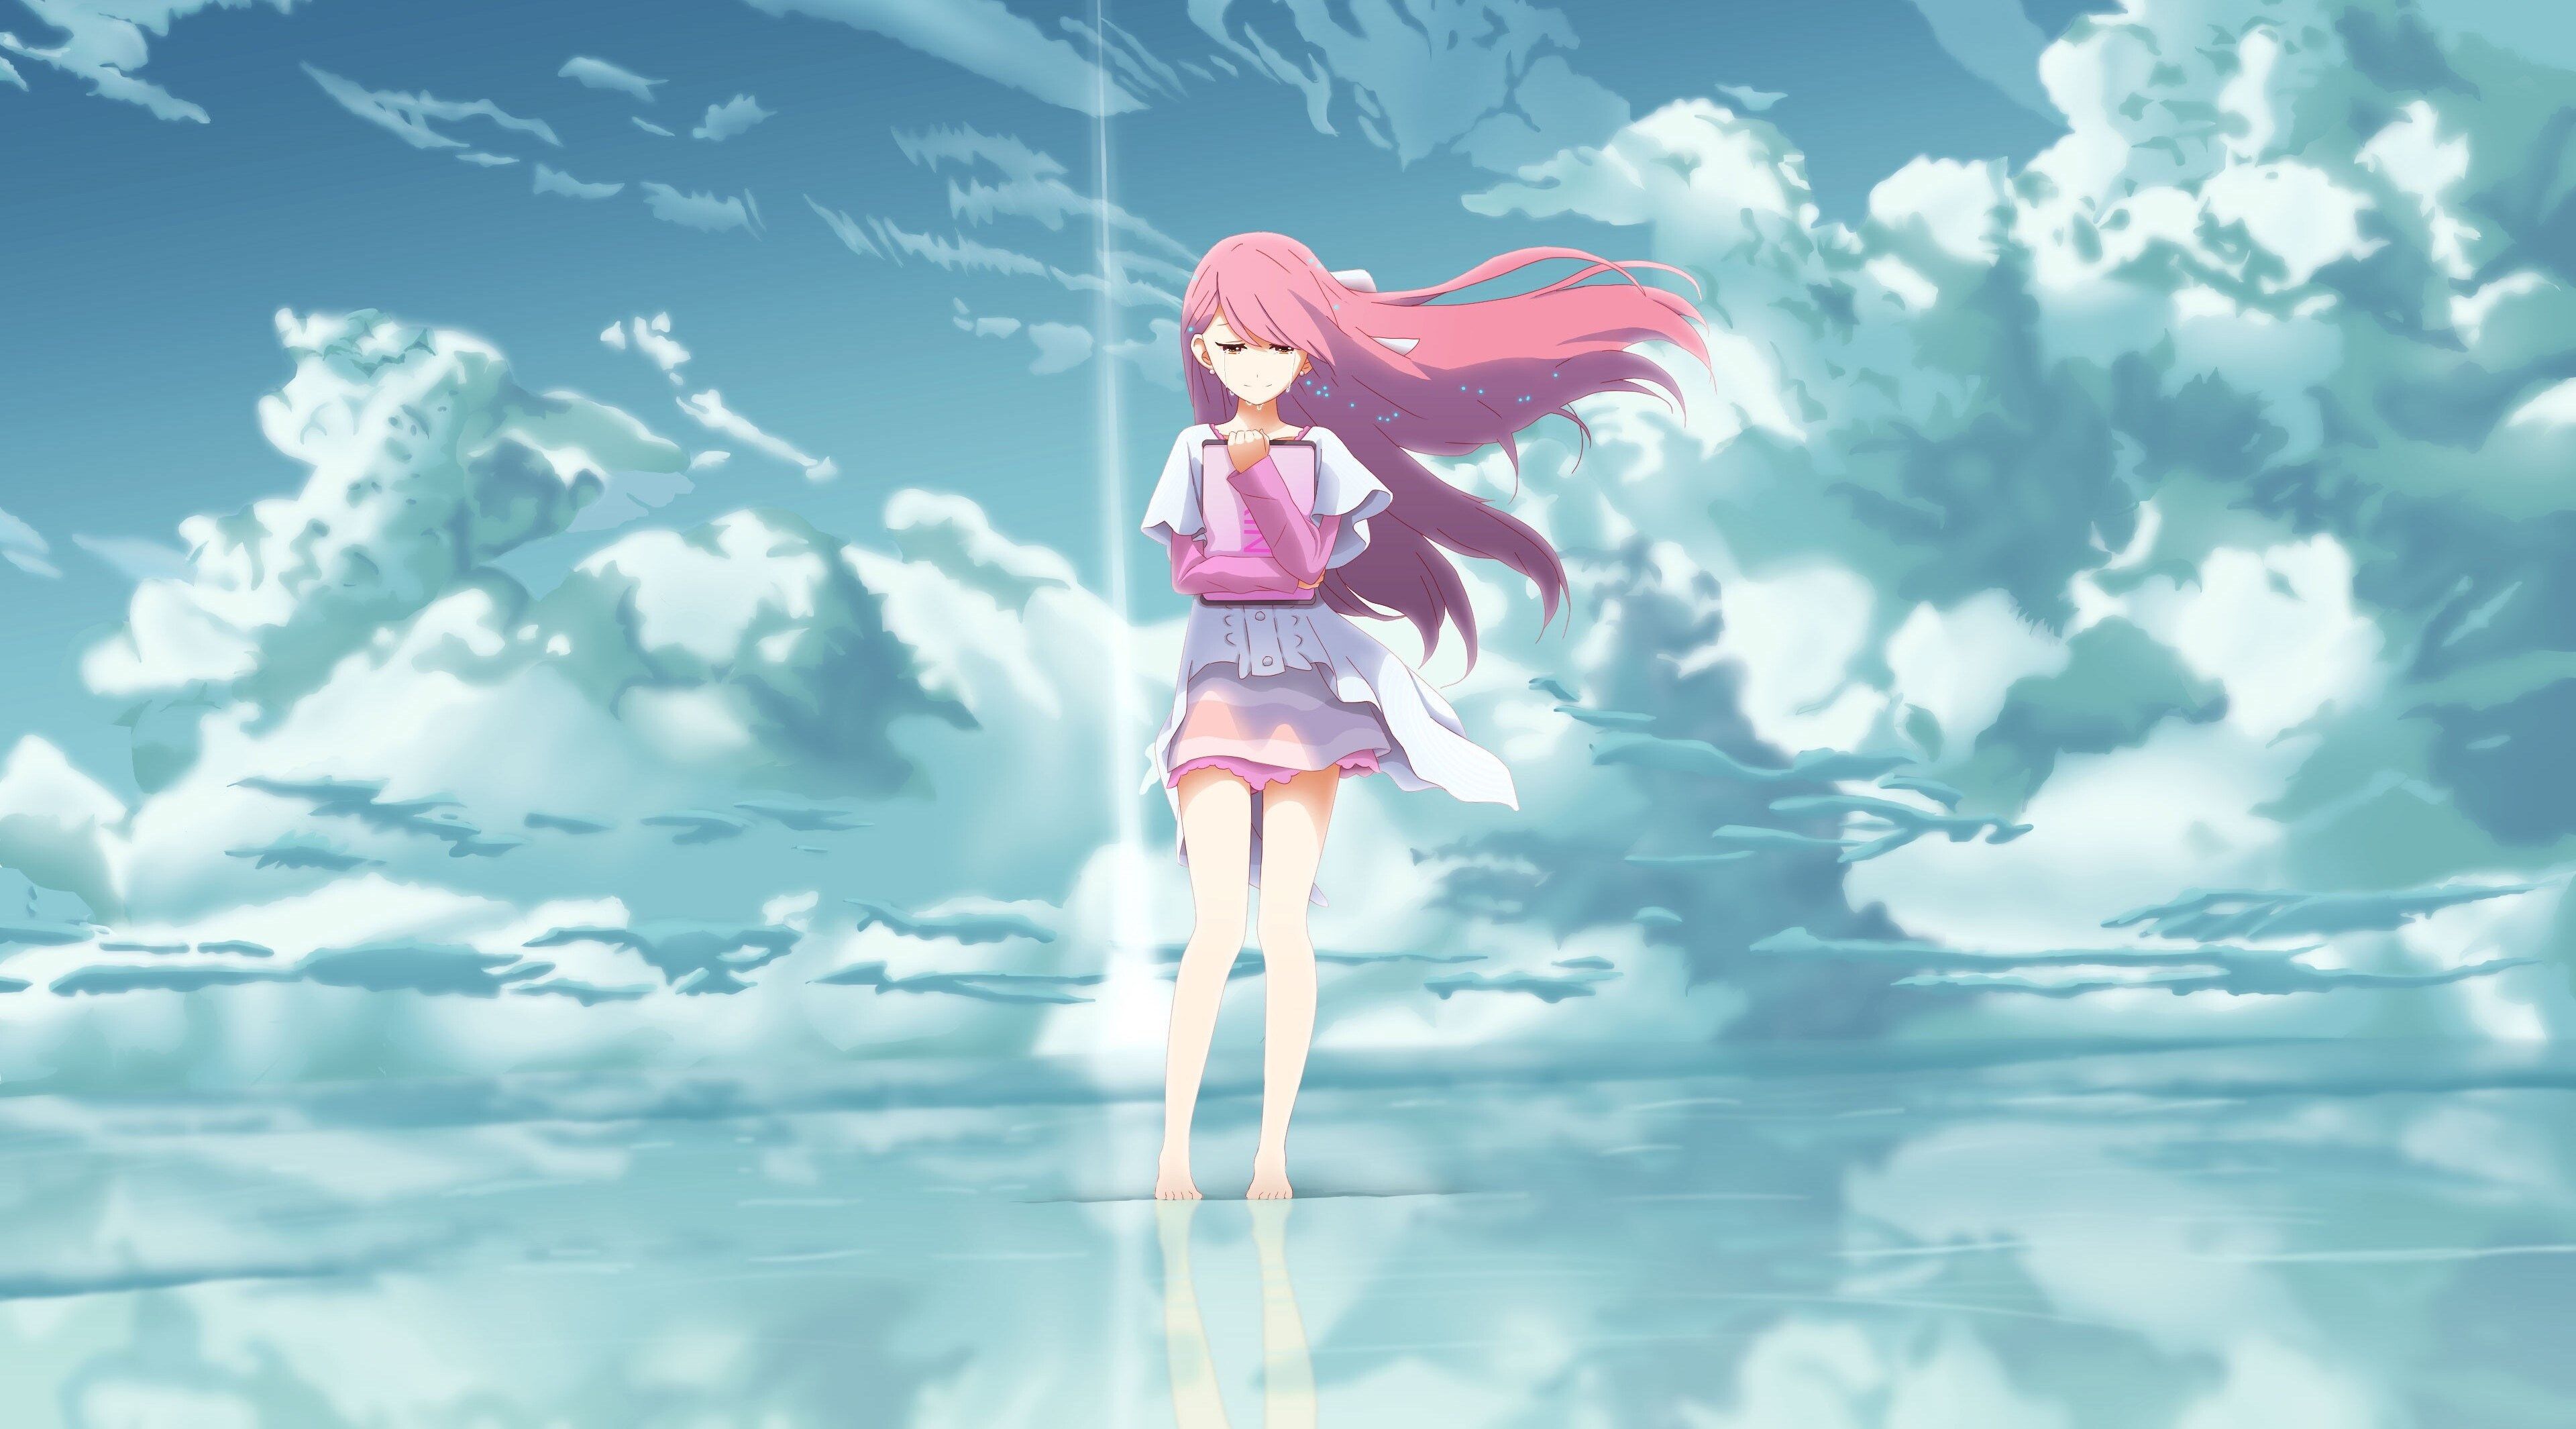 anime 4k windows wallpaper for desktop. Anime wallpaper, Anime background, Animated wallpaper for mobile